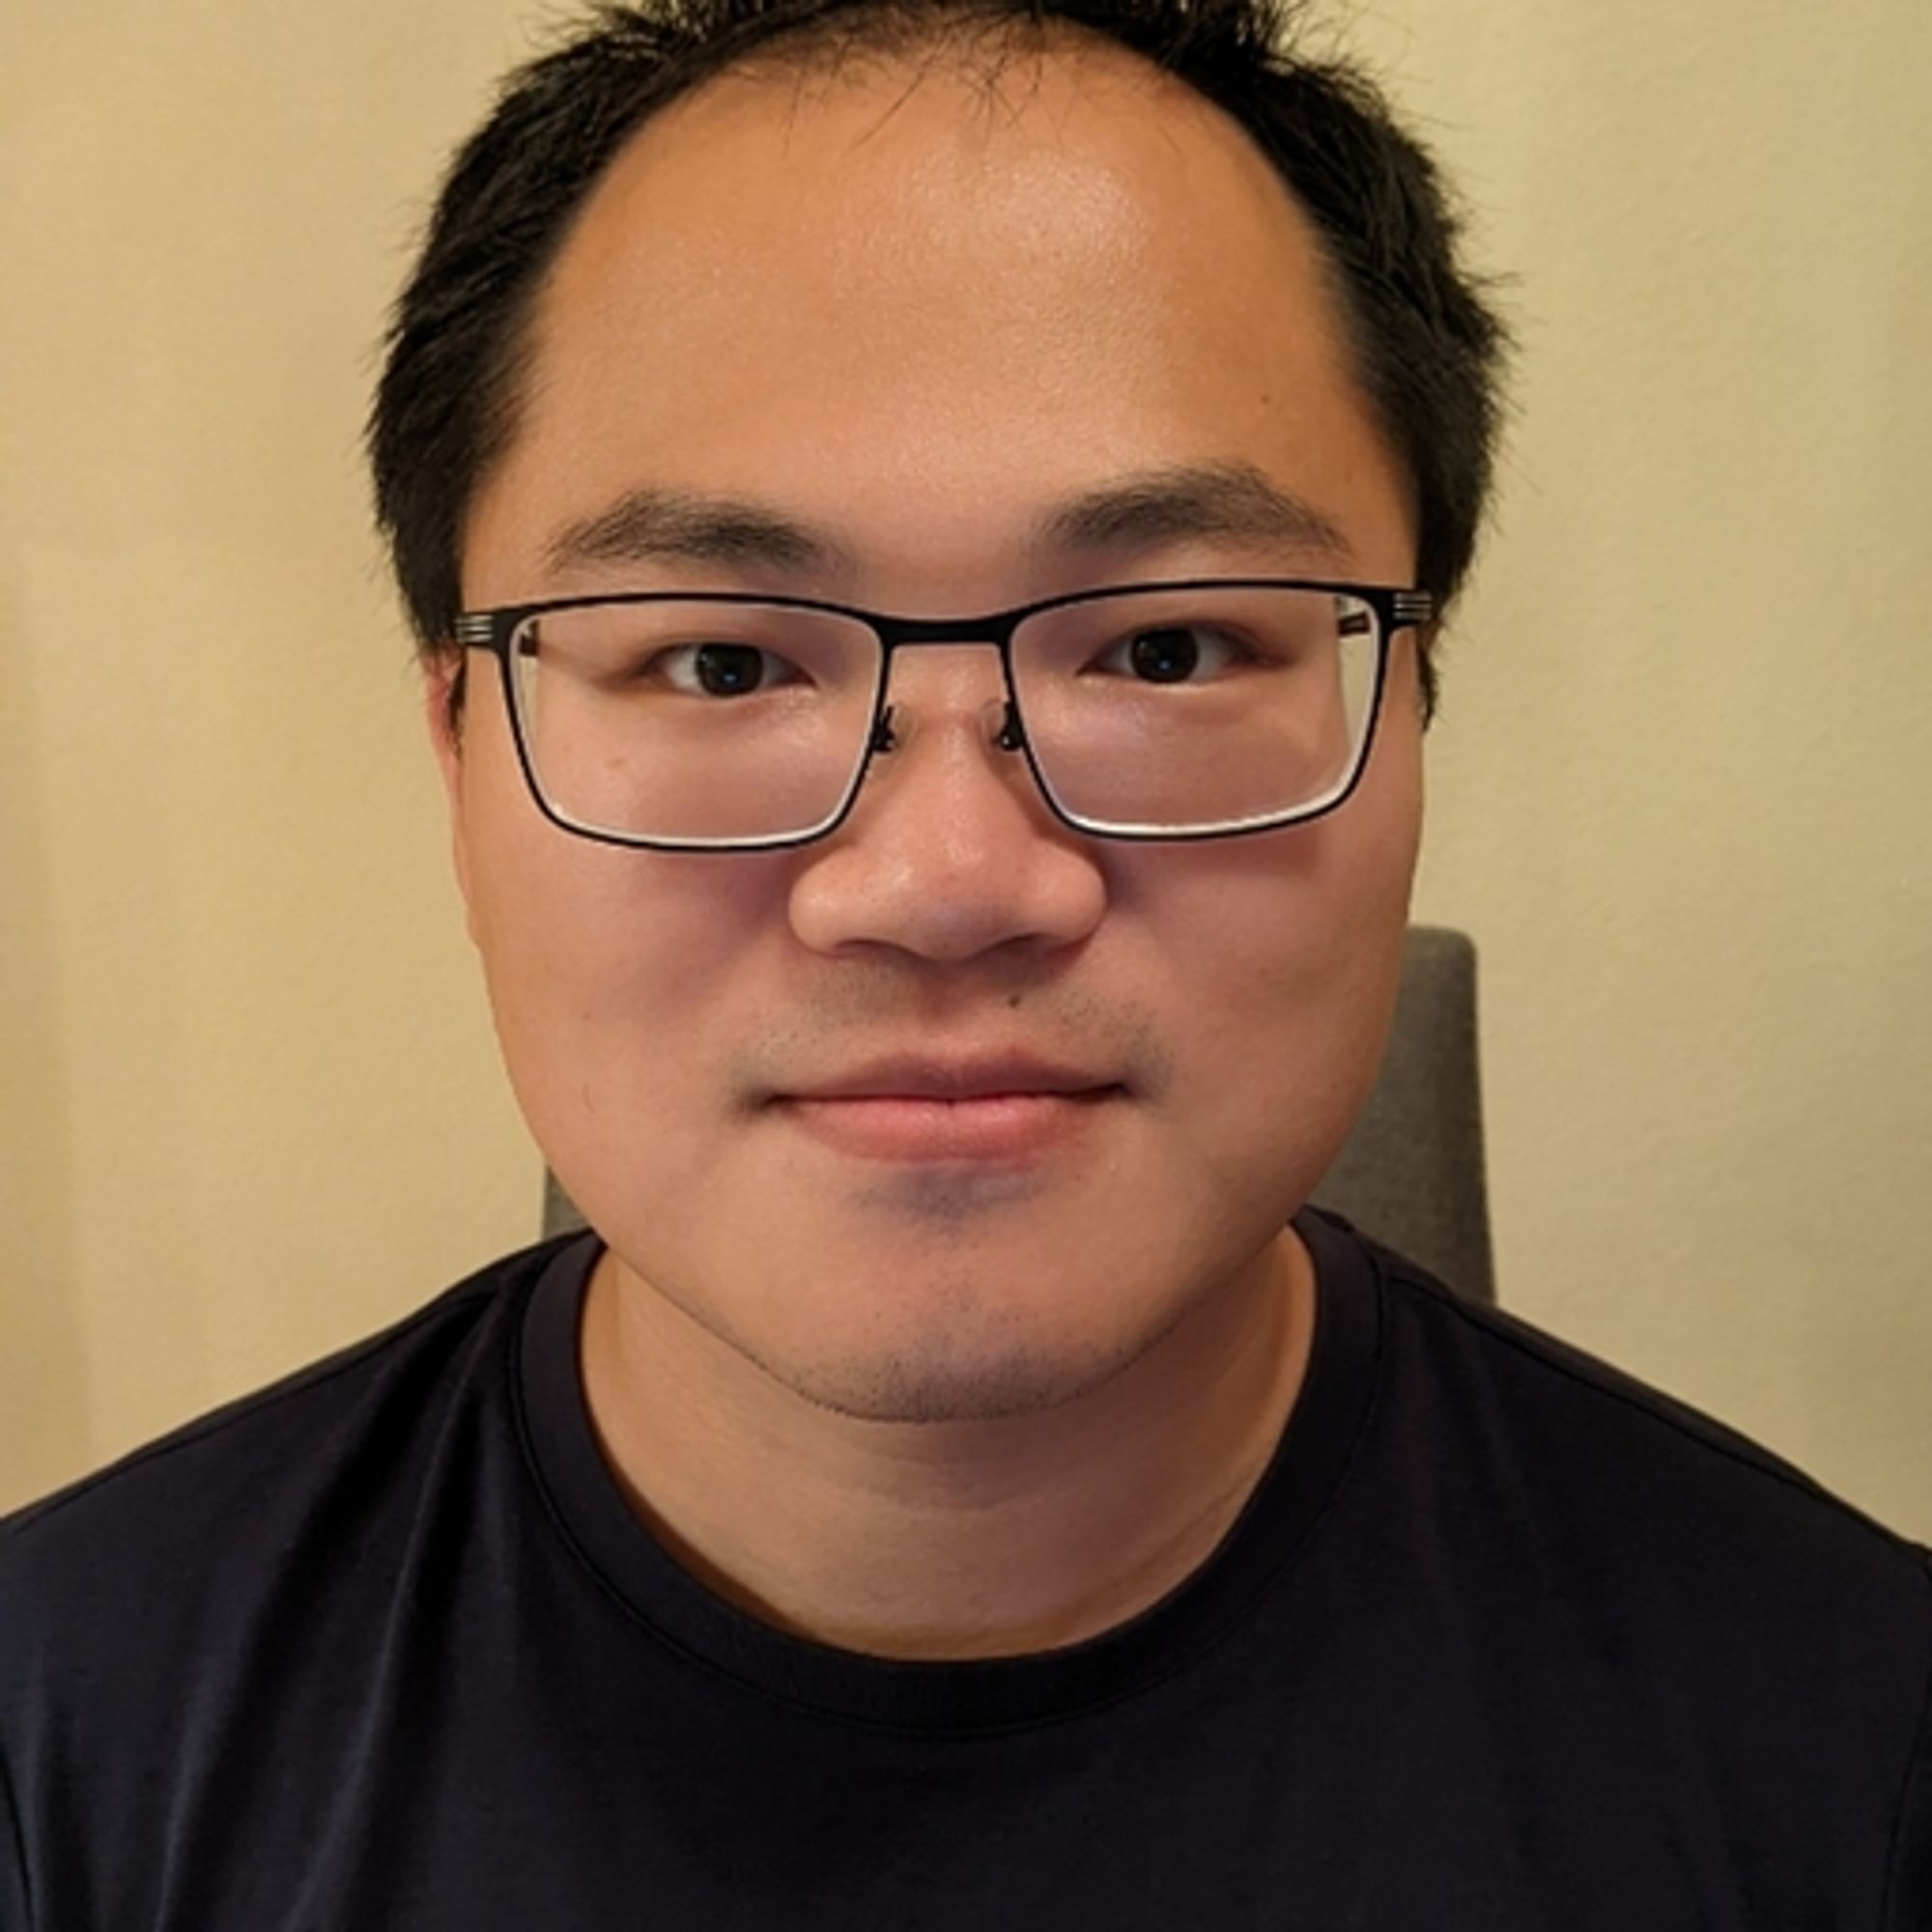 Shiyu Wang
Software Engineer
Former staff engineer at Facebook • Loves video games, Richi Majong